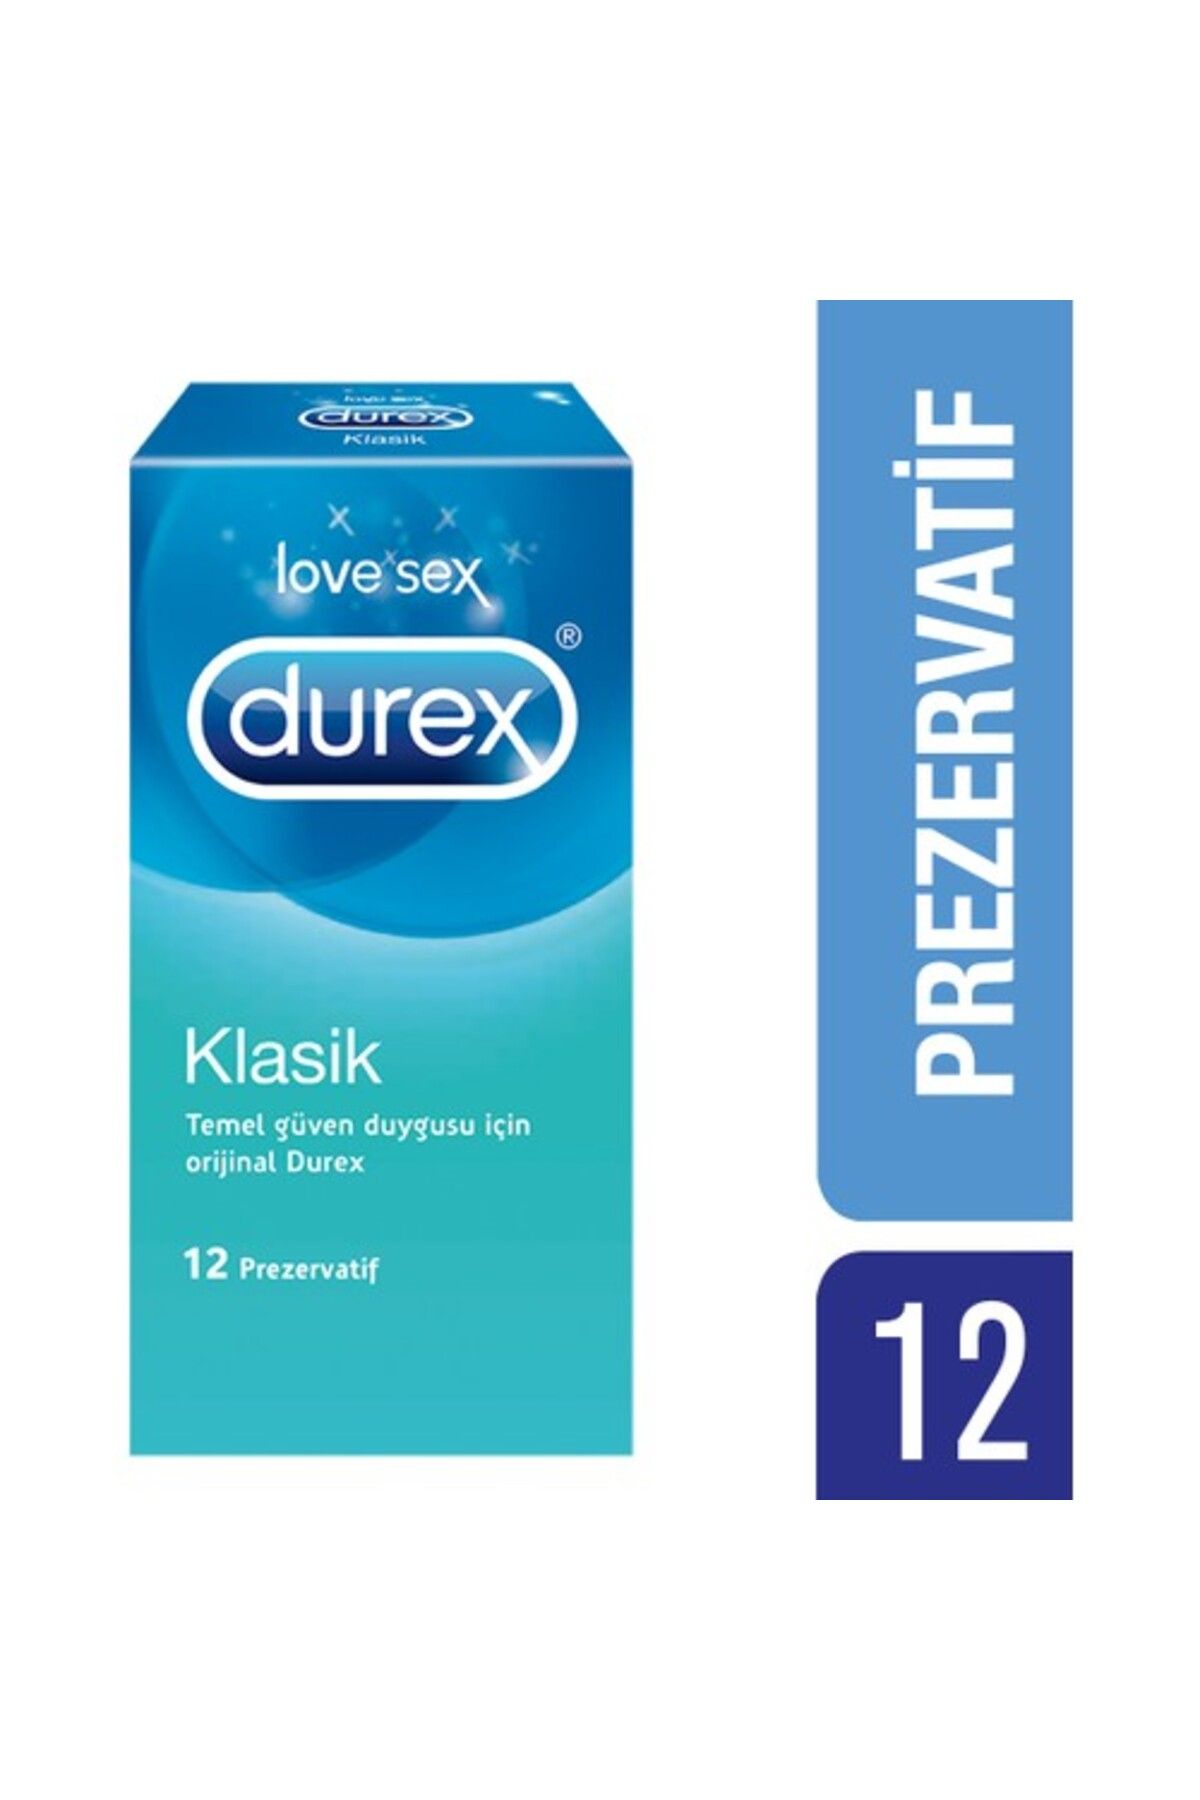 Durex Klasik Prezervatif 12'li - Temel Güven Duygusu